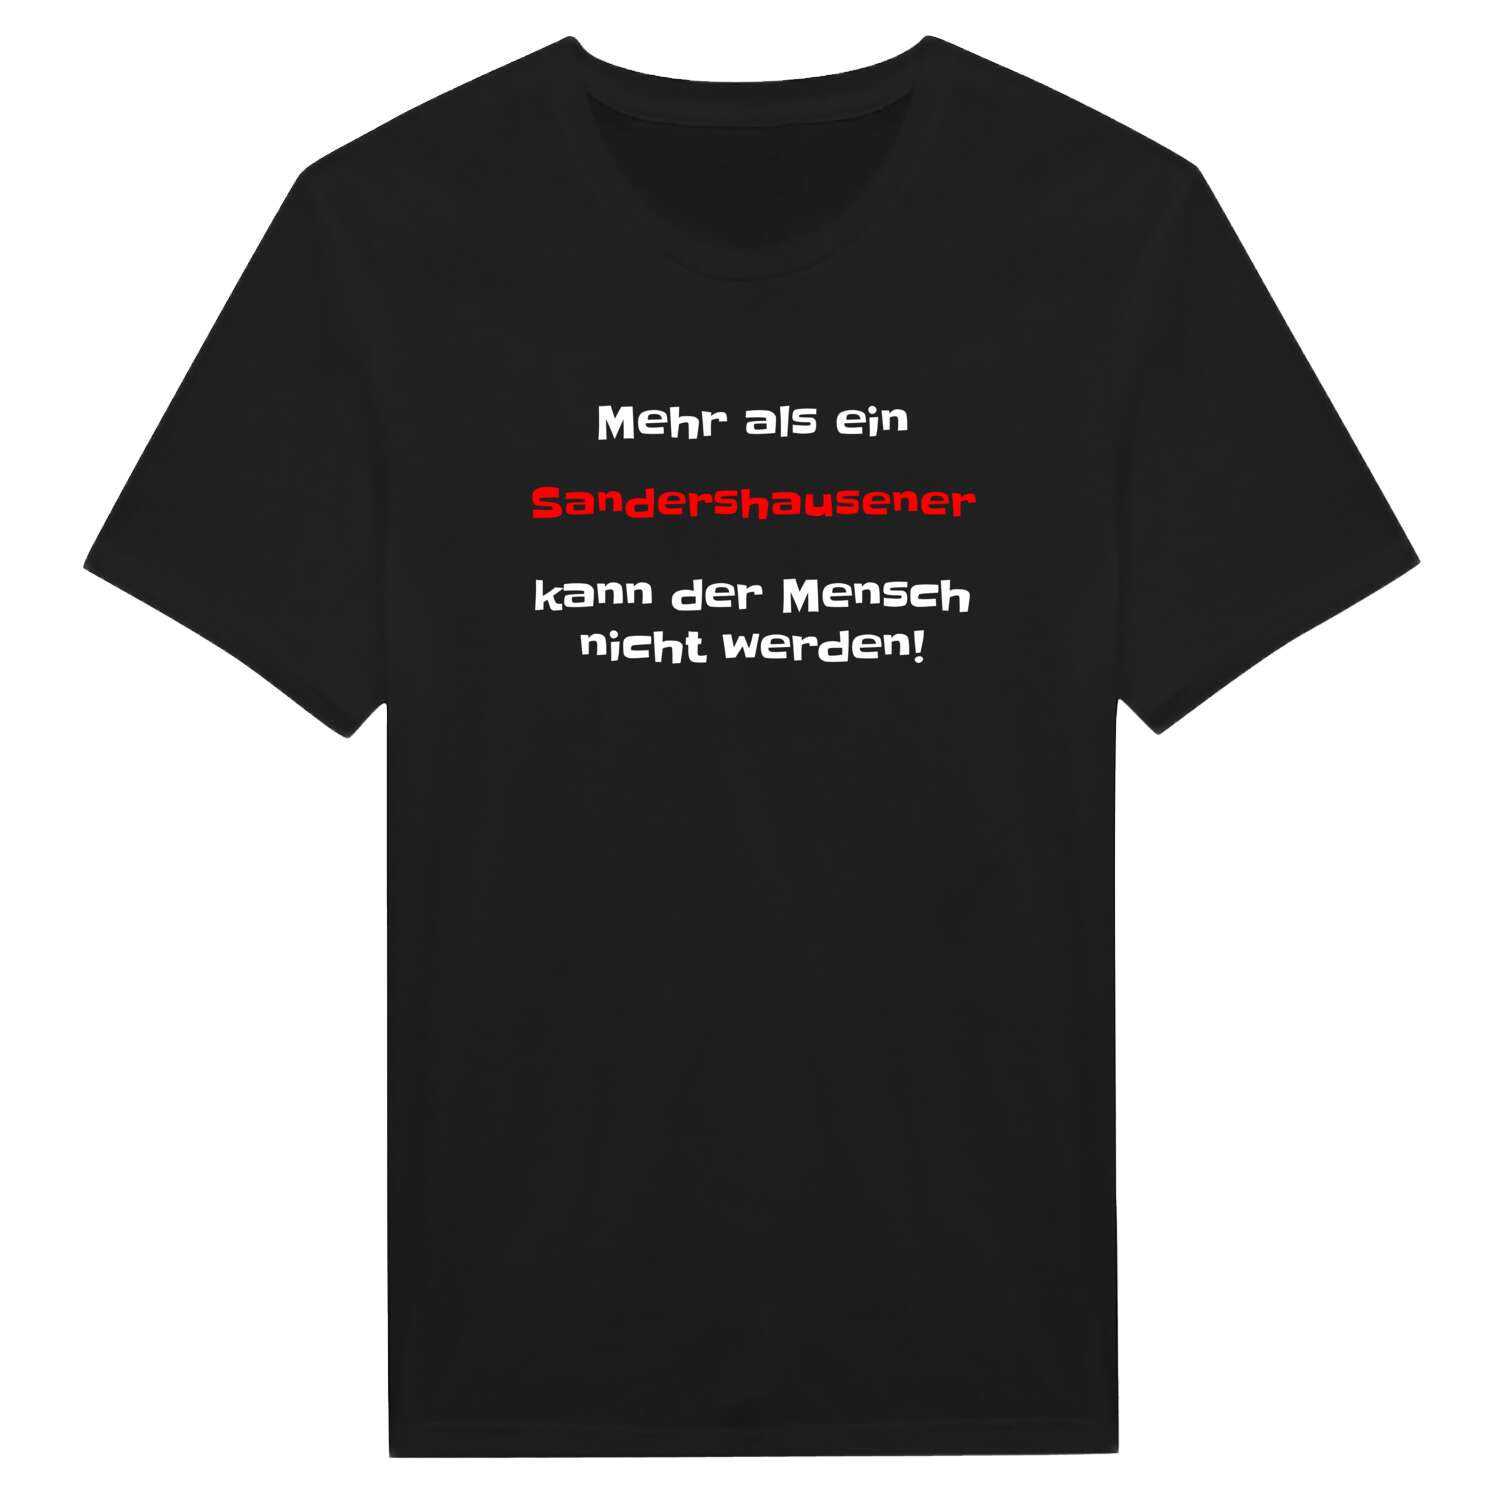 Sandershausen T-Shirt »Mehr als ein«